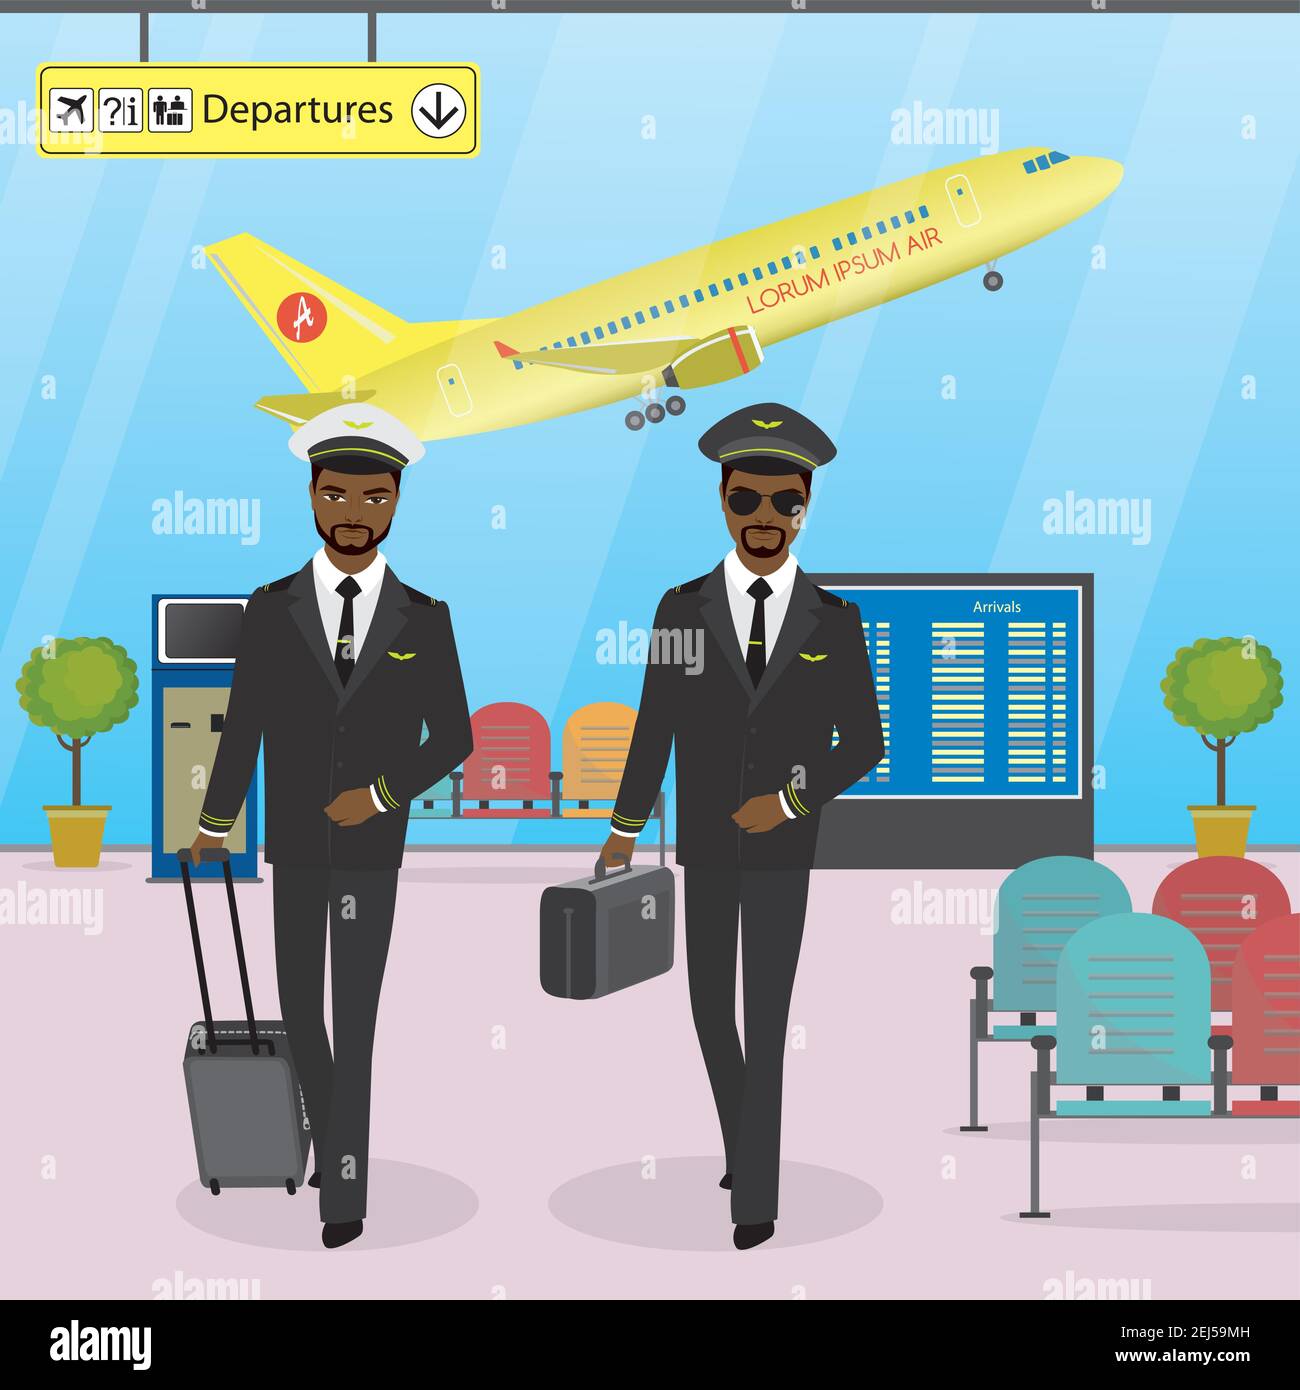 Die Kabinenbesatzung läuft auf einem modernen Flughafen mit Gepäck, Piloten in Uniform, Flughafen-Interieur und Möbel, Cartoon-Vektor-Illustration Stock Vektor